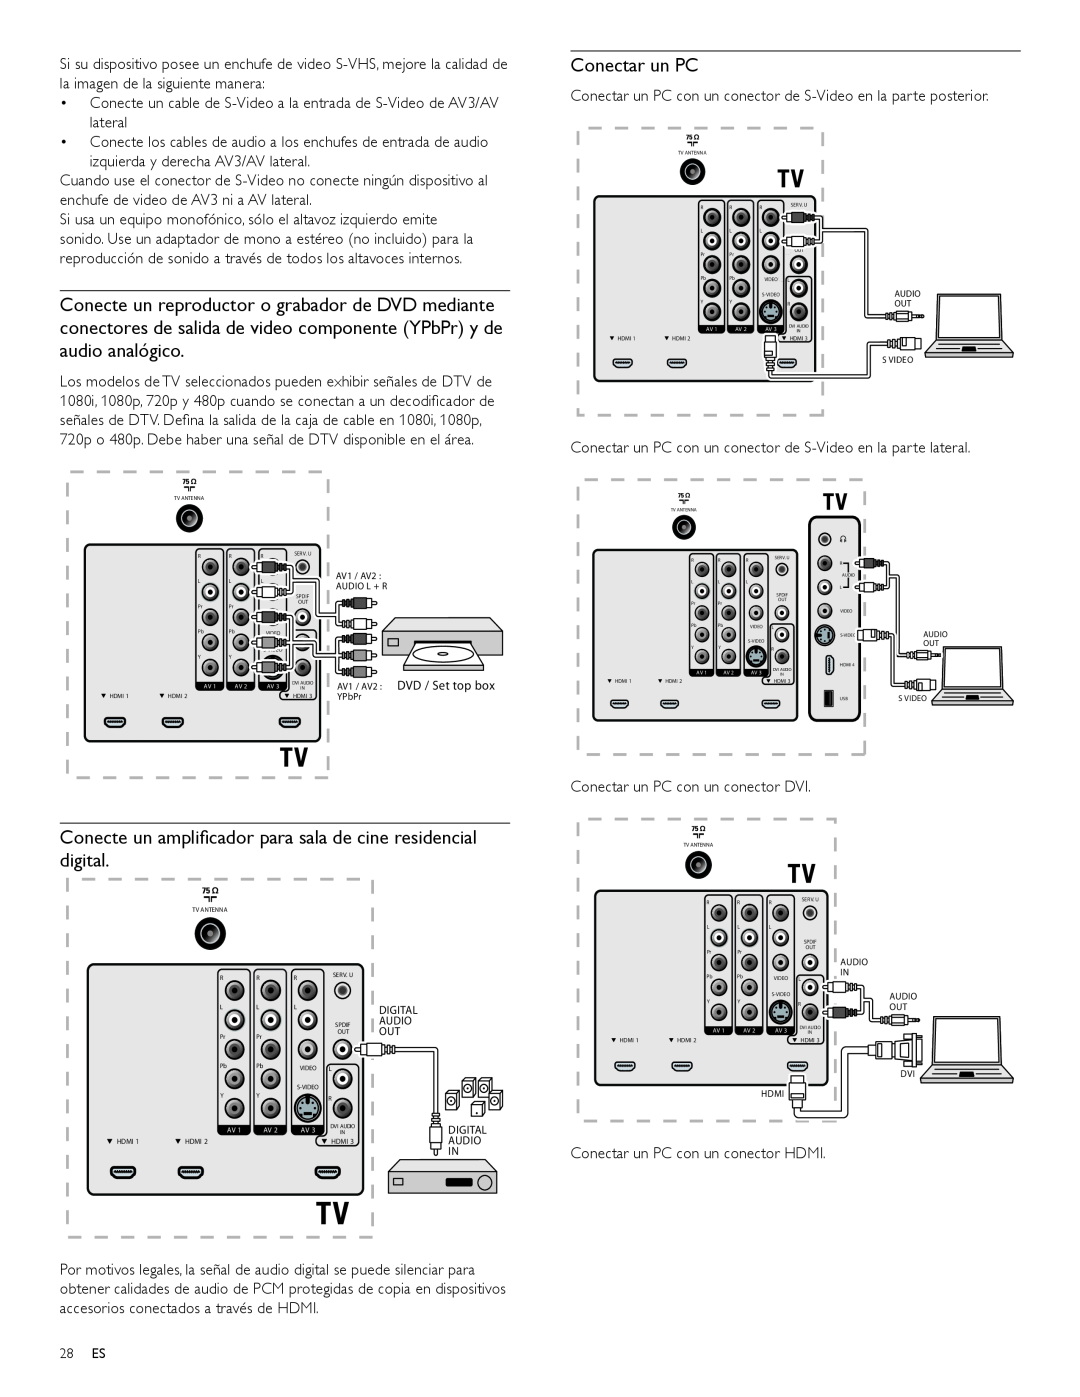 Magnavox 47MF439B user manual Conectar un PC, Conecte un ampliﬁcador para sala de cine residencial digital 